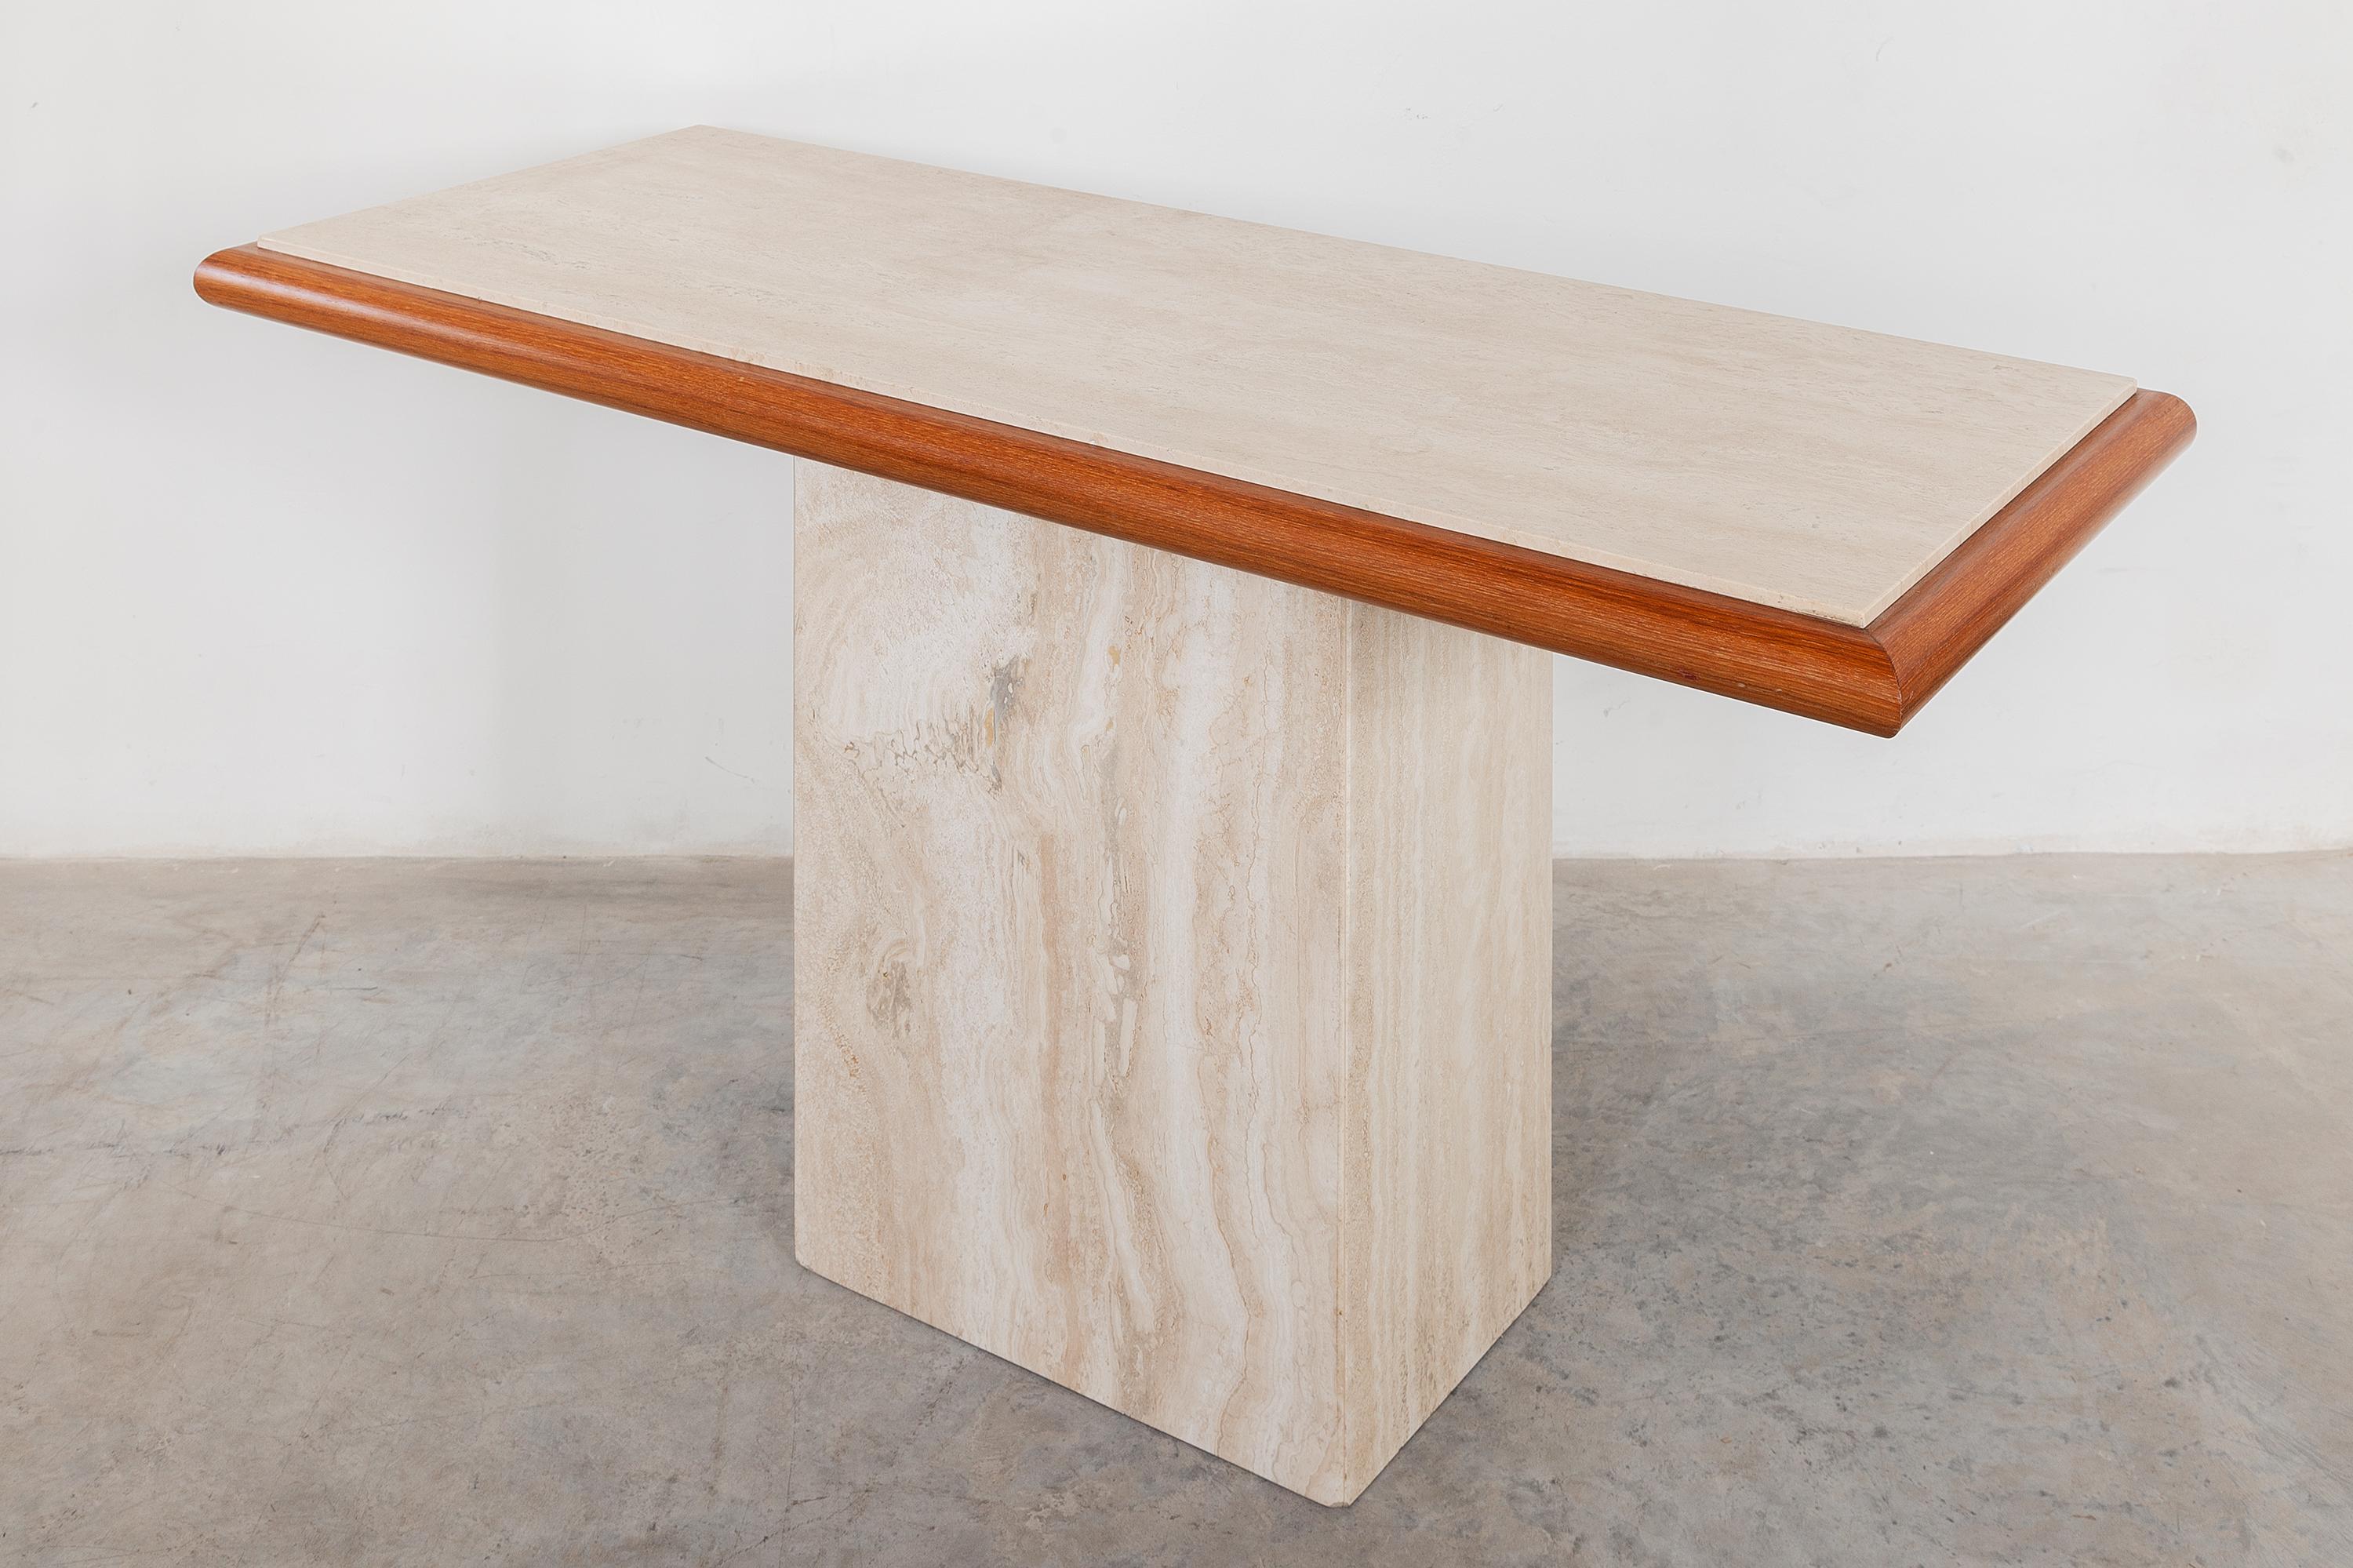 Table console italienne en travertin des années 1970, conçue par Stone International, Italie. Plateau de table en pierre crème et gris chaud, bordé de teck.

Dimensions : 139W x 74H x 57D. Parfait état d'origine.